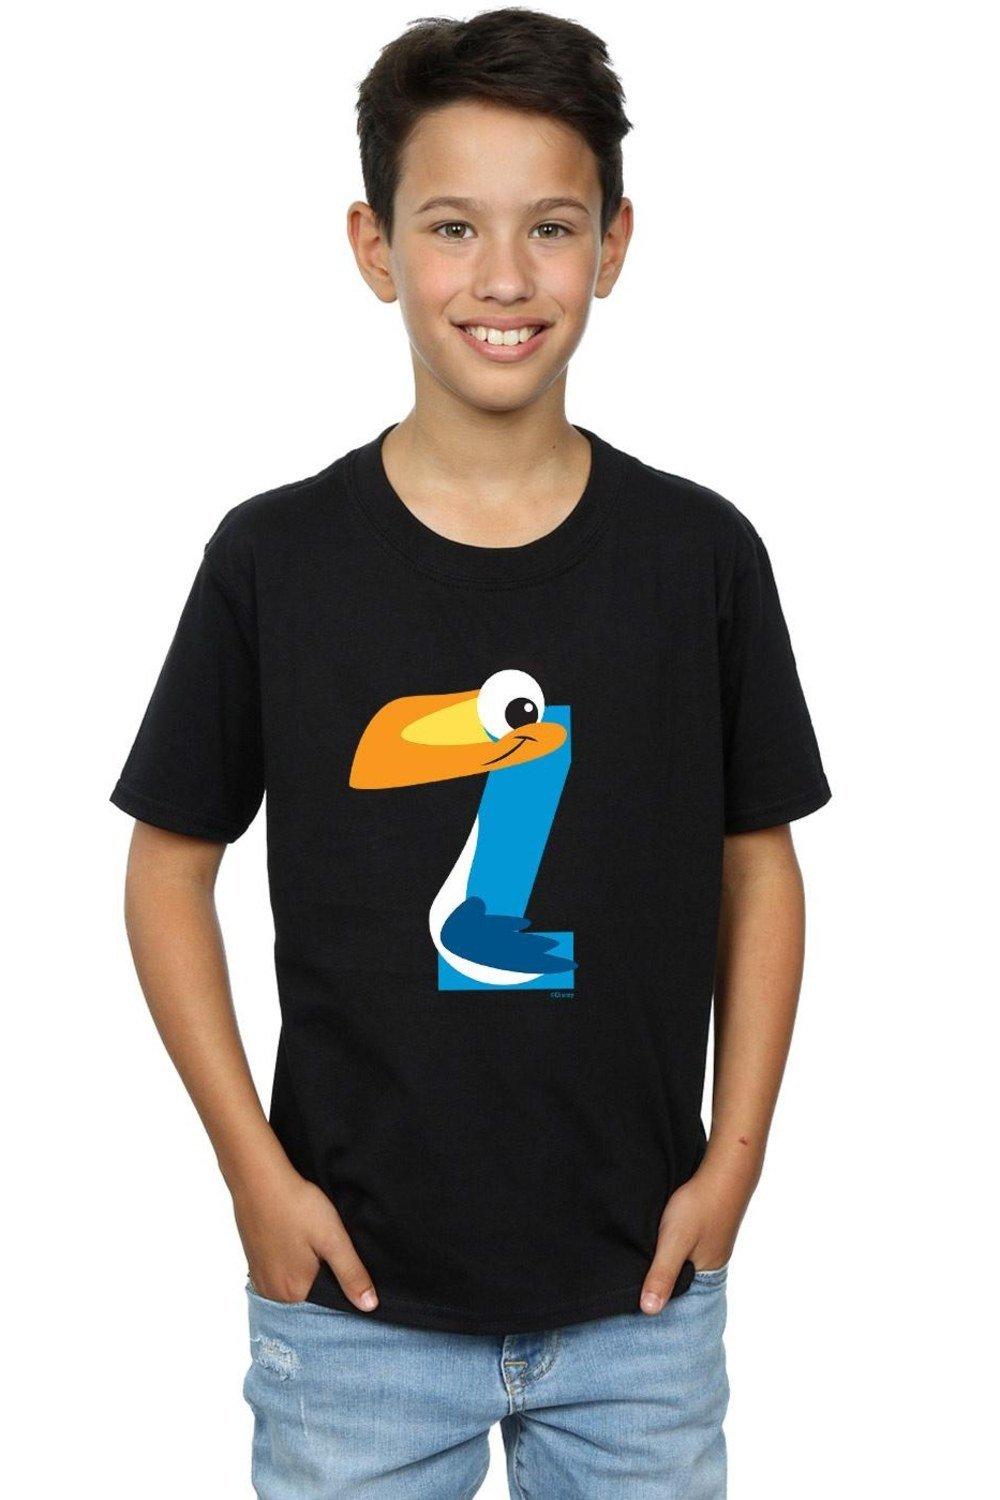 Alphabet Z Is For Zazu T-Shirt